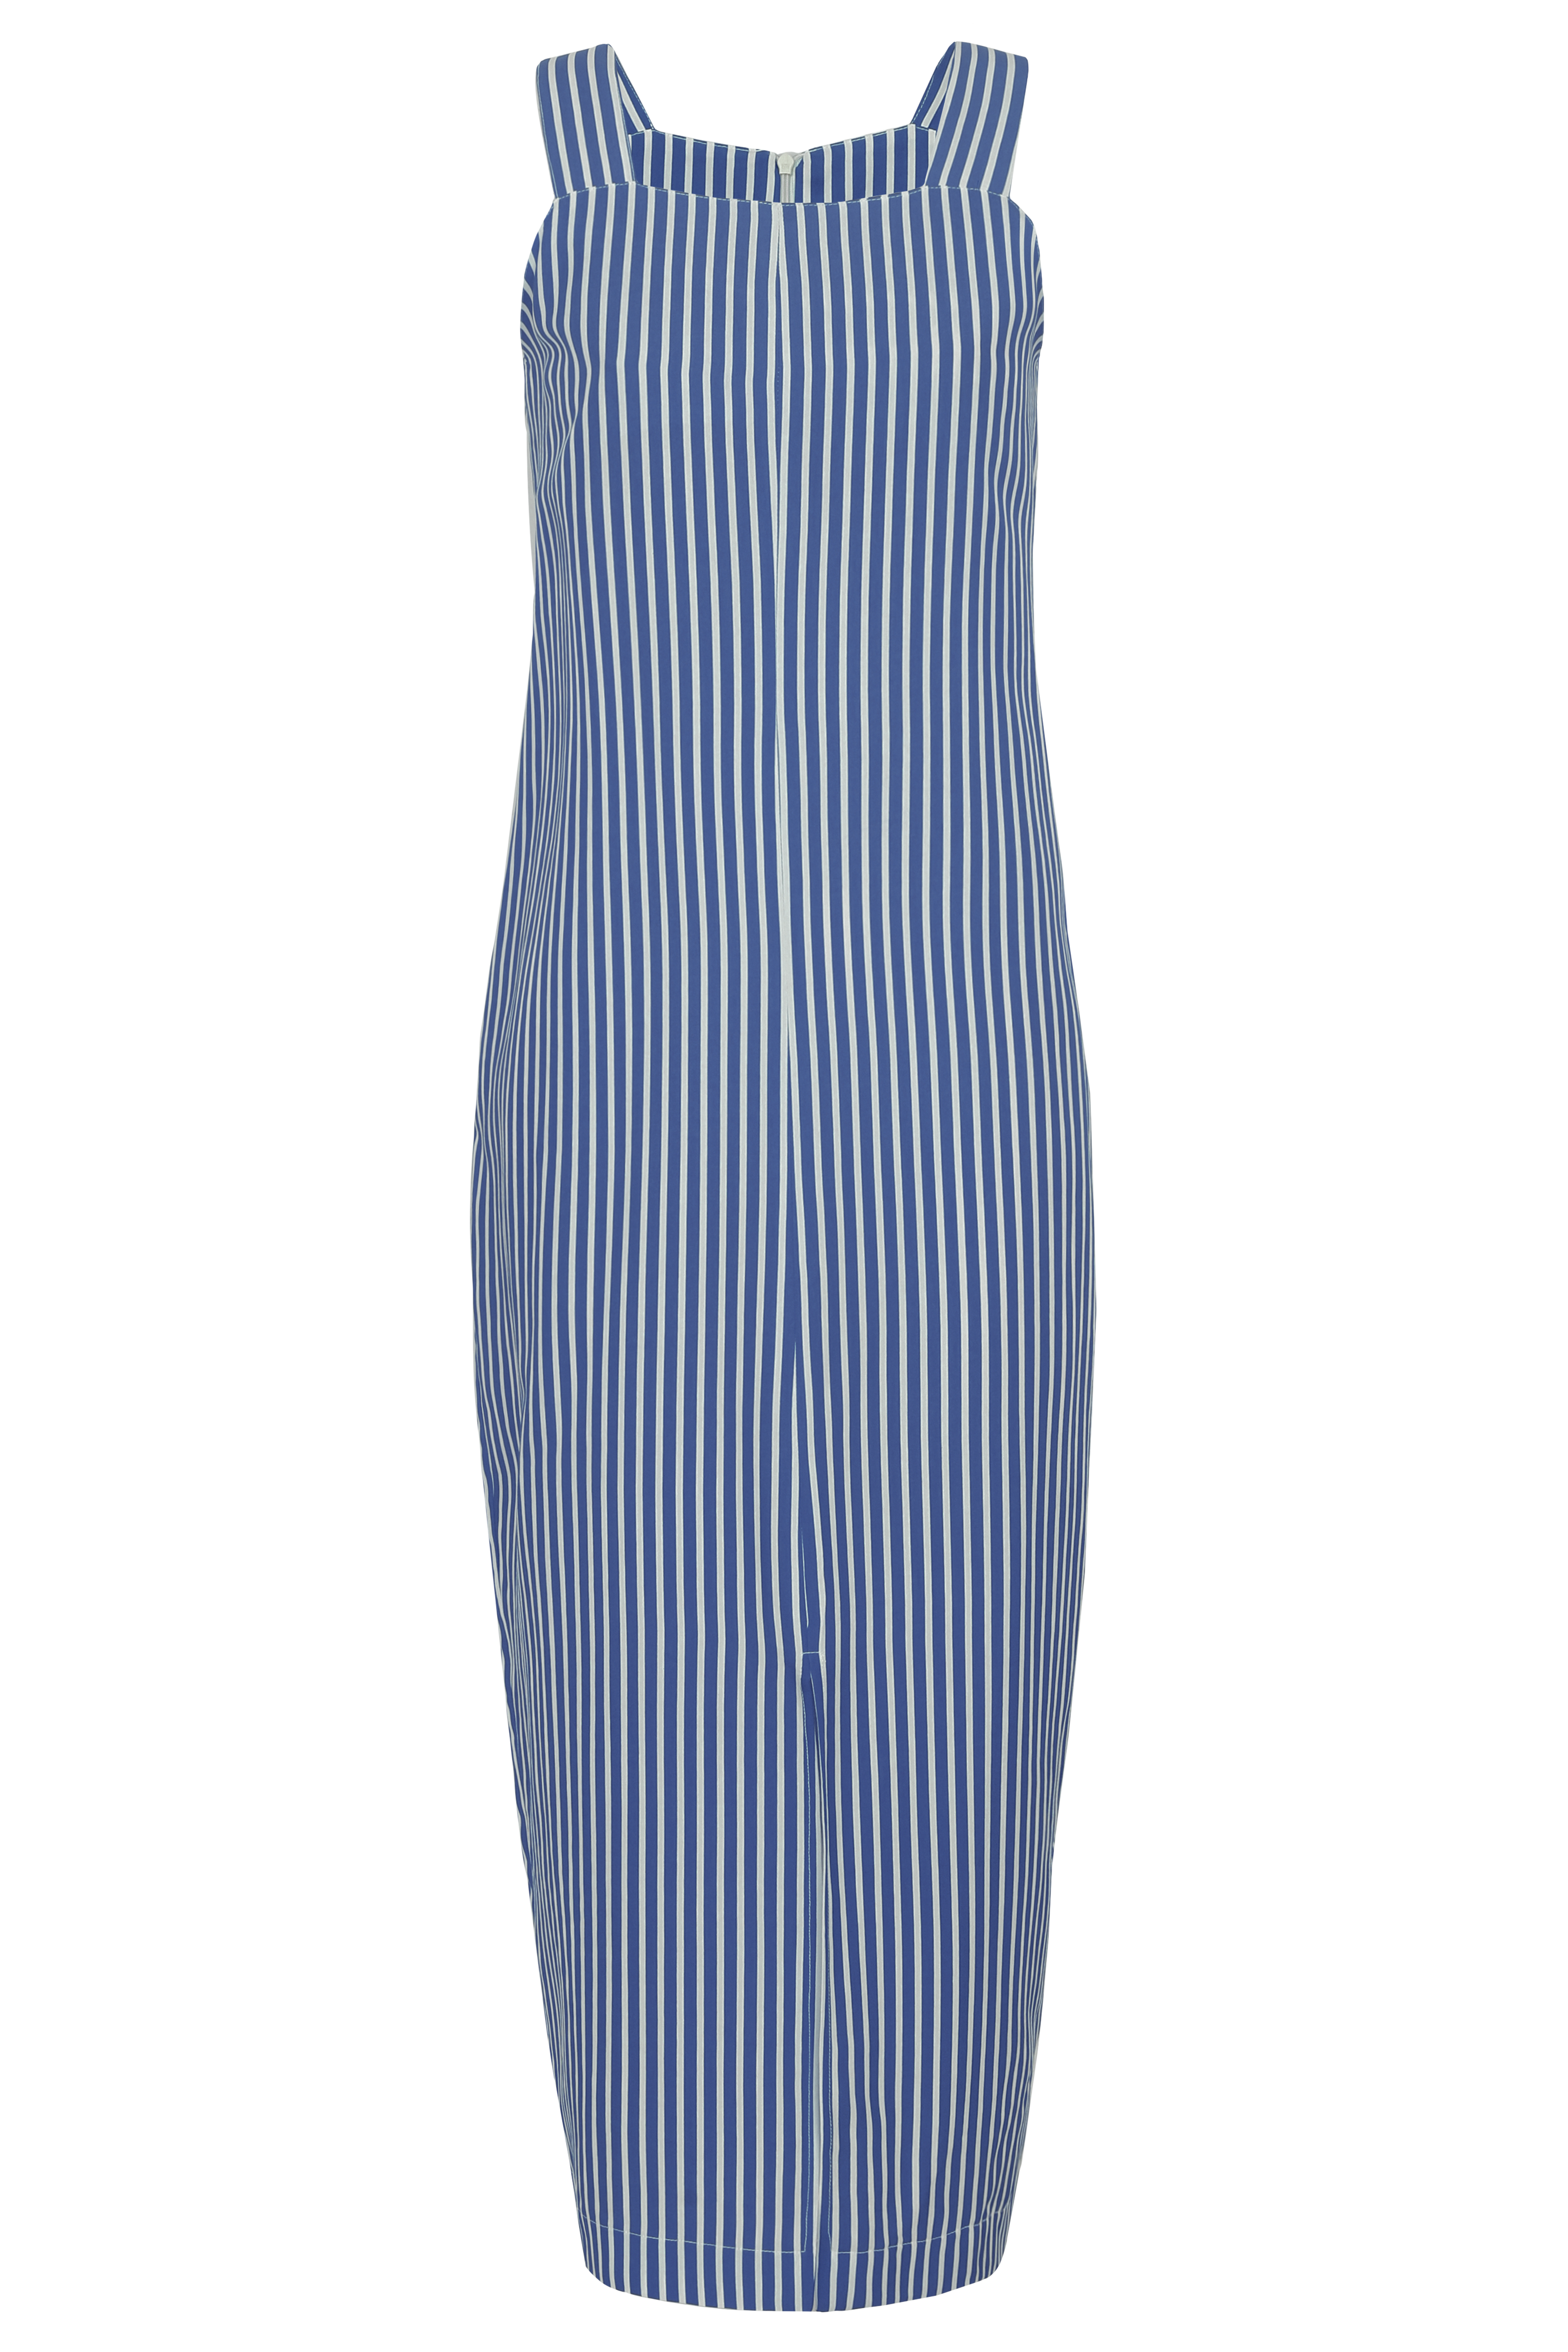 Vestido Linien Azul Naval